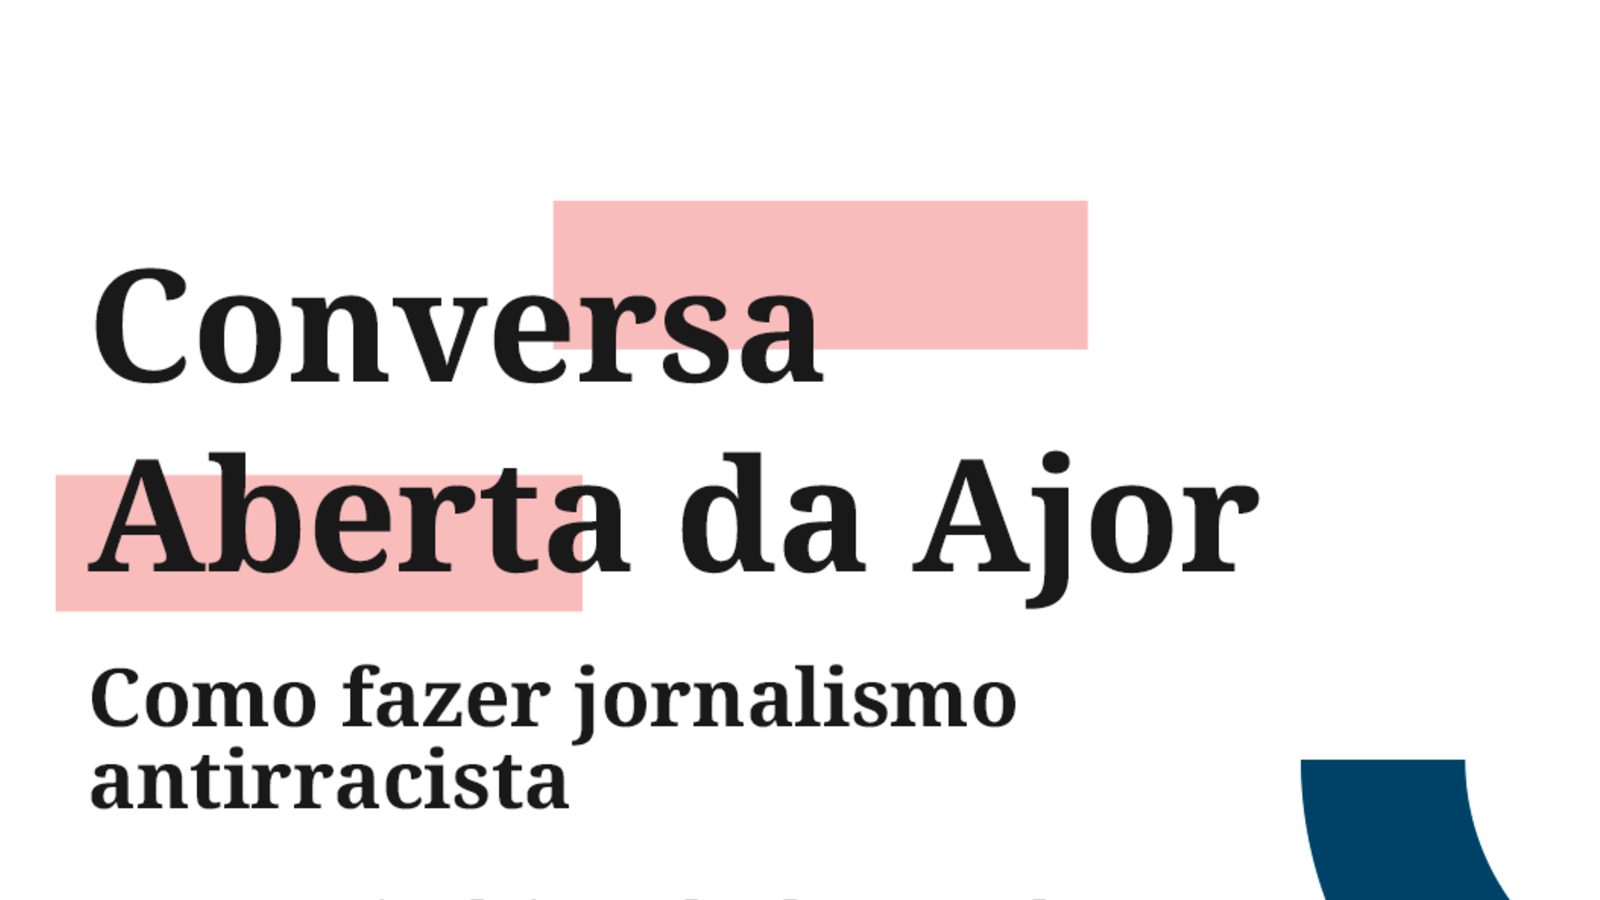 Conversa Aberta da Ajor será sobre jornalismo antirracista